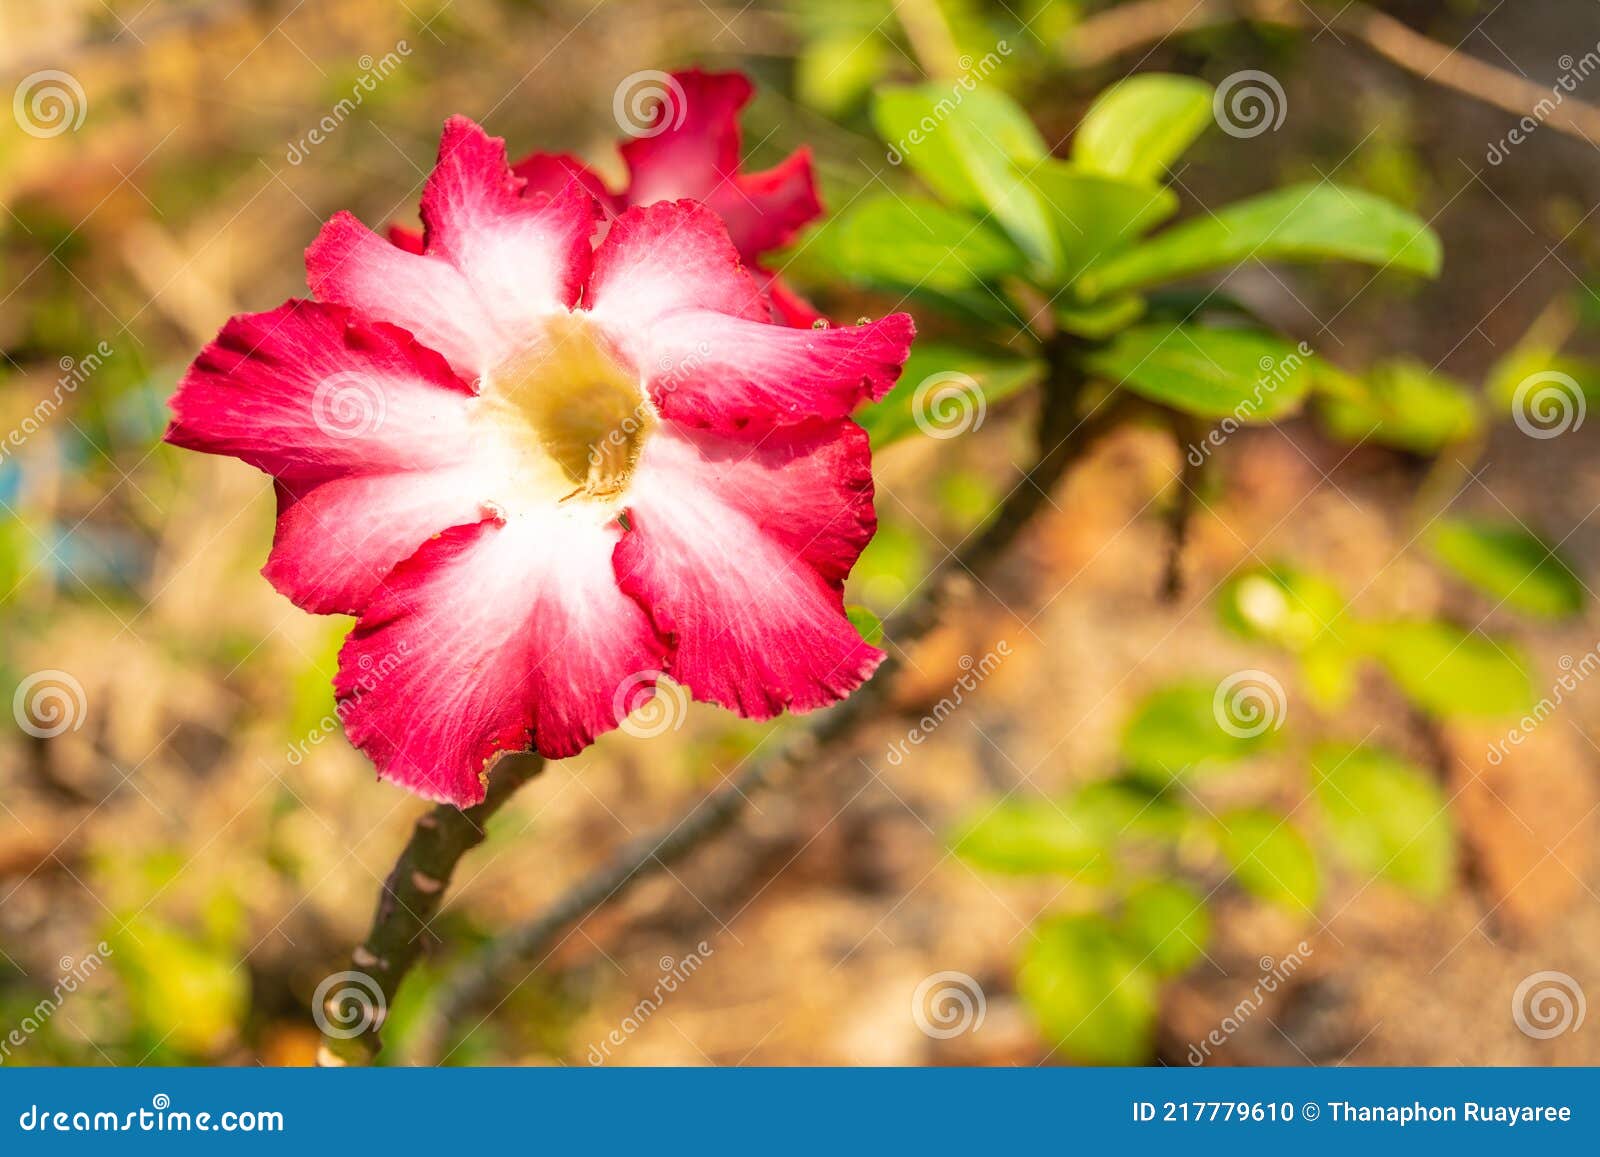 La Fleur Rose Et Blanche Appelée Azalea Est Une Plante à Fleurs Cultivée à  Ratchaburi Photo stock - Image du fleuraison, lame: 217779610